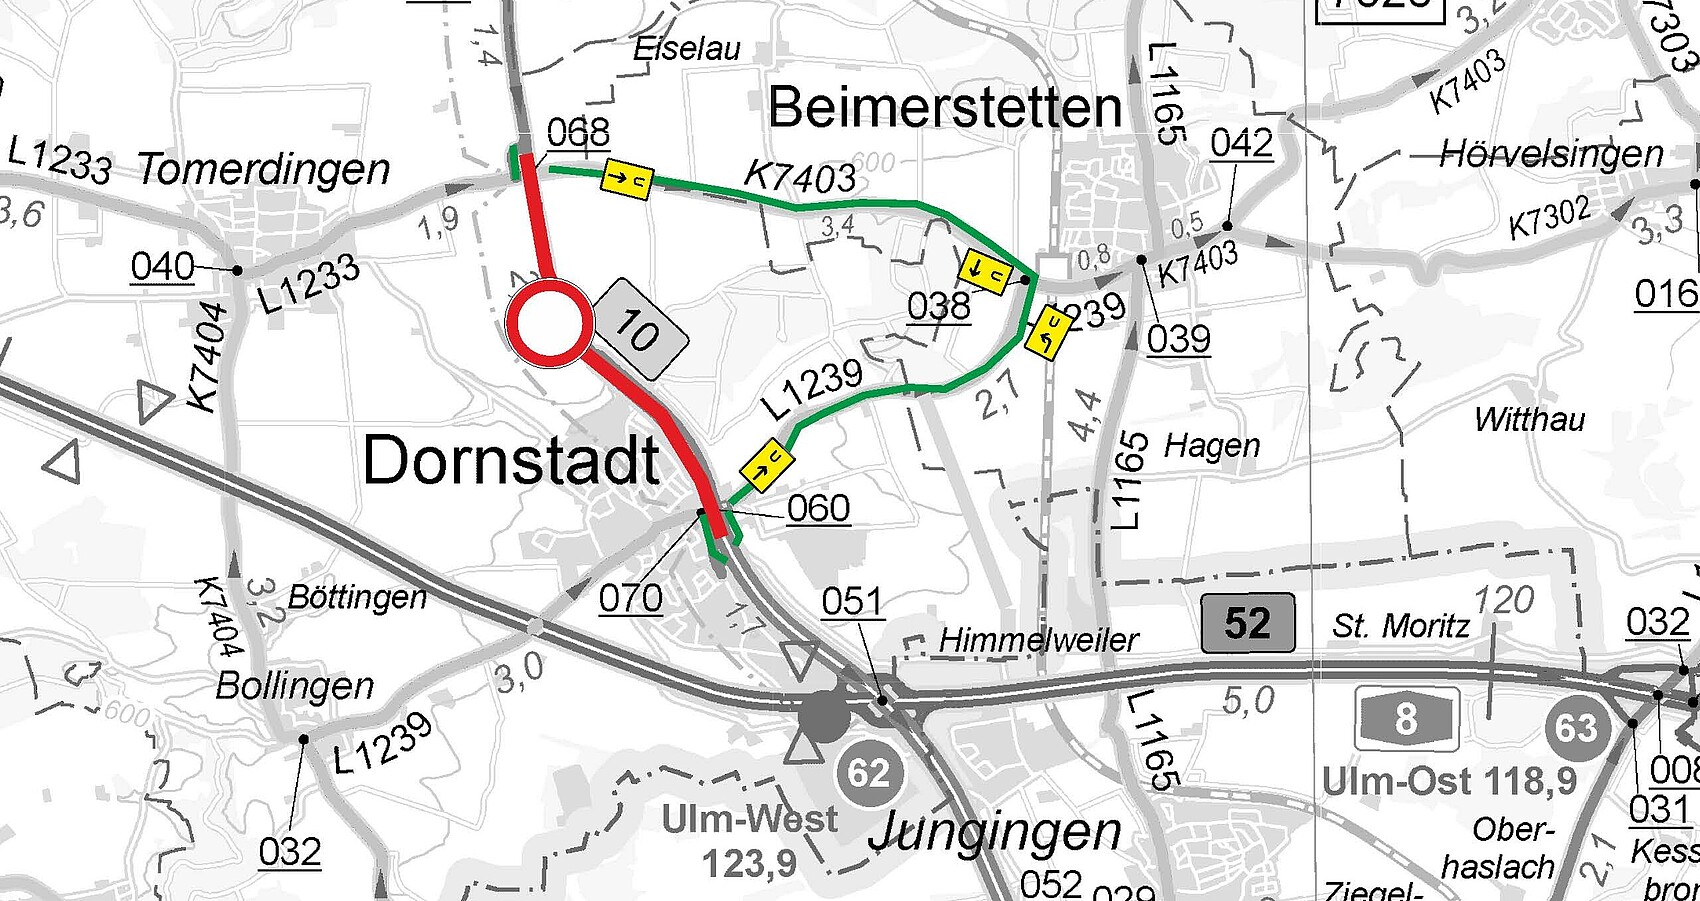 Umleitungsskizze zur Fahrbahndeckenerneuerung der B 10 zwischen Tomerdingen und Dornstadt